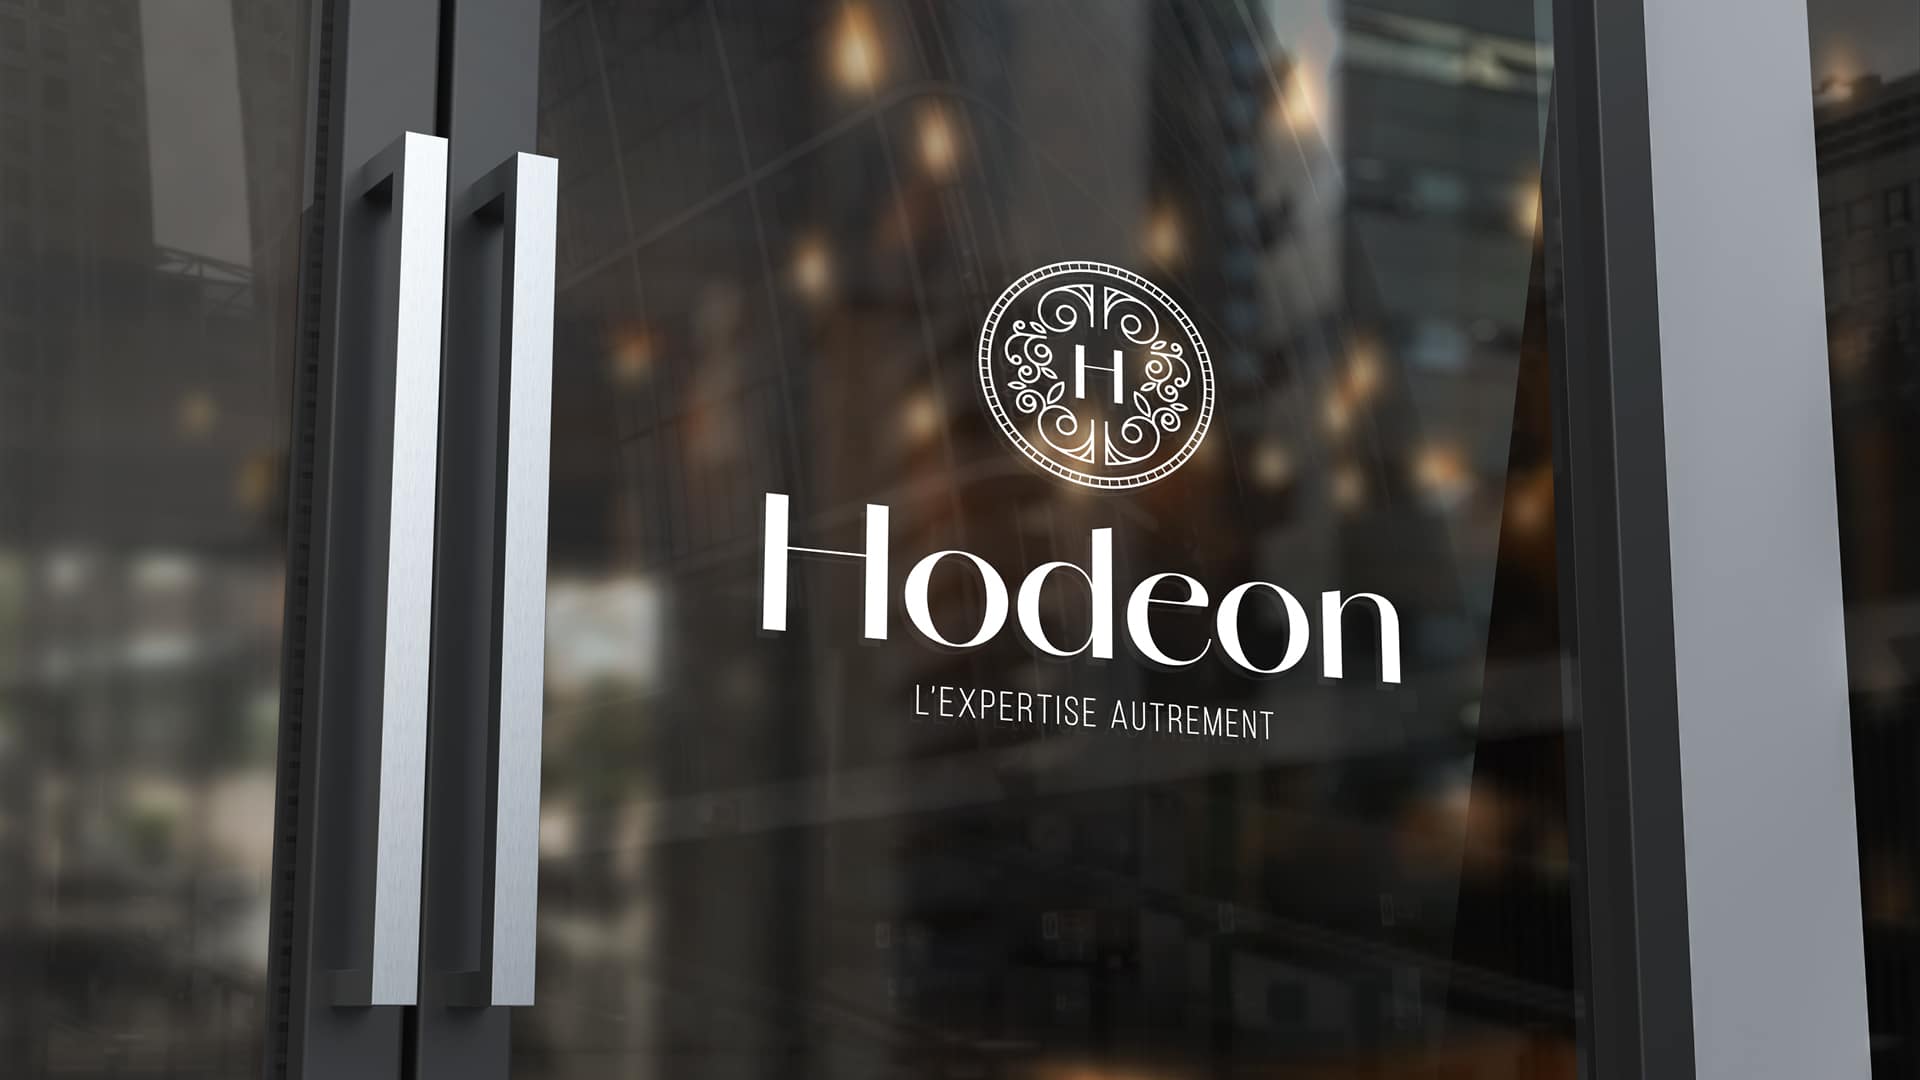 Refonte d'identité visuelle pour Hodeon par NRV, agence de graphisme à Toulouse : stratégie de branding et communication 360 réussie.